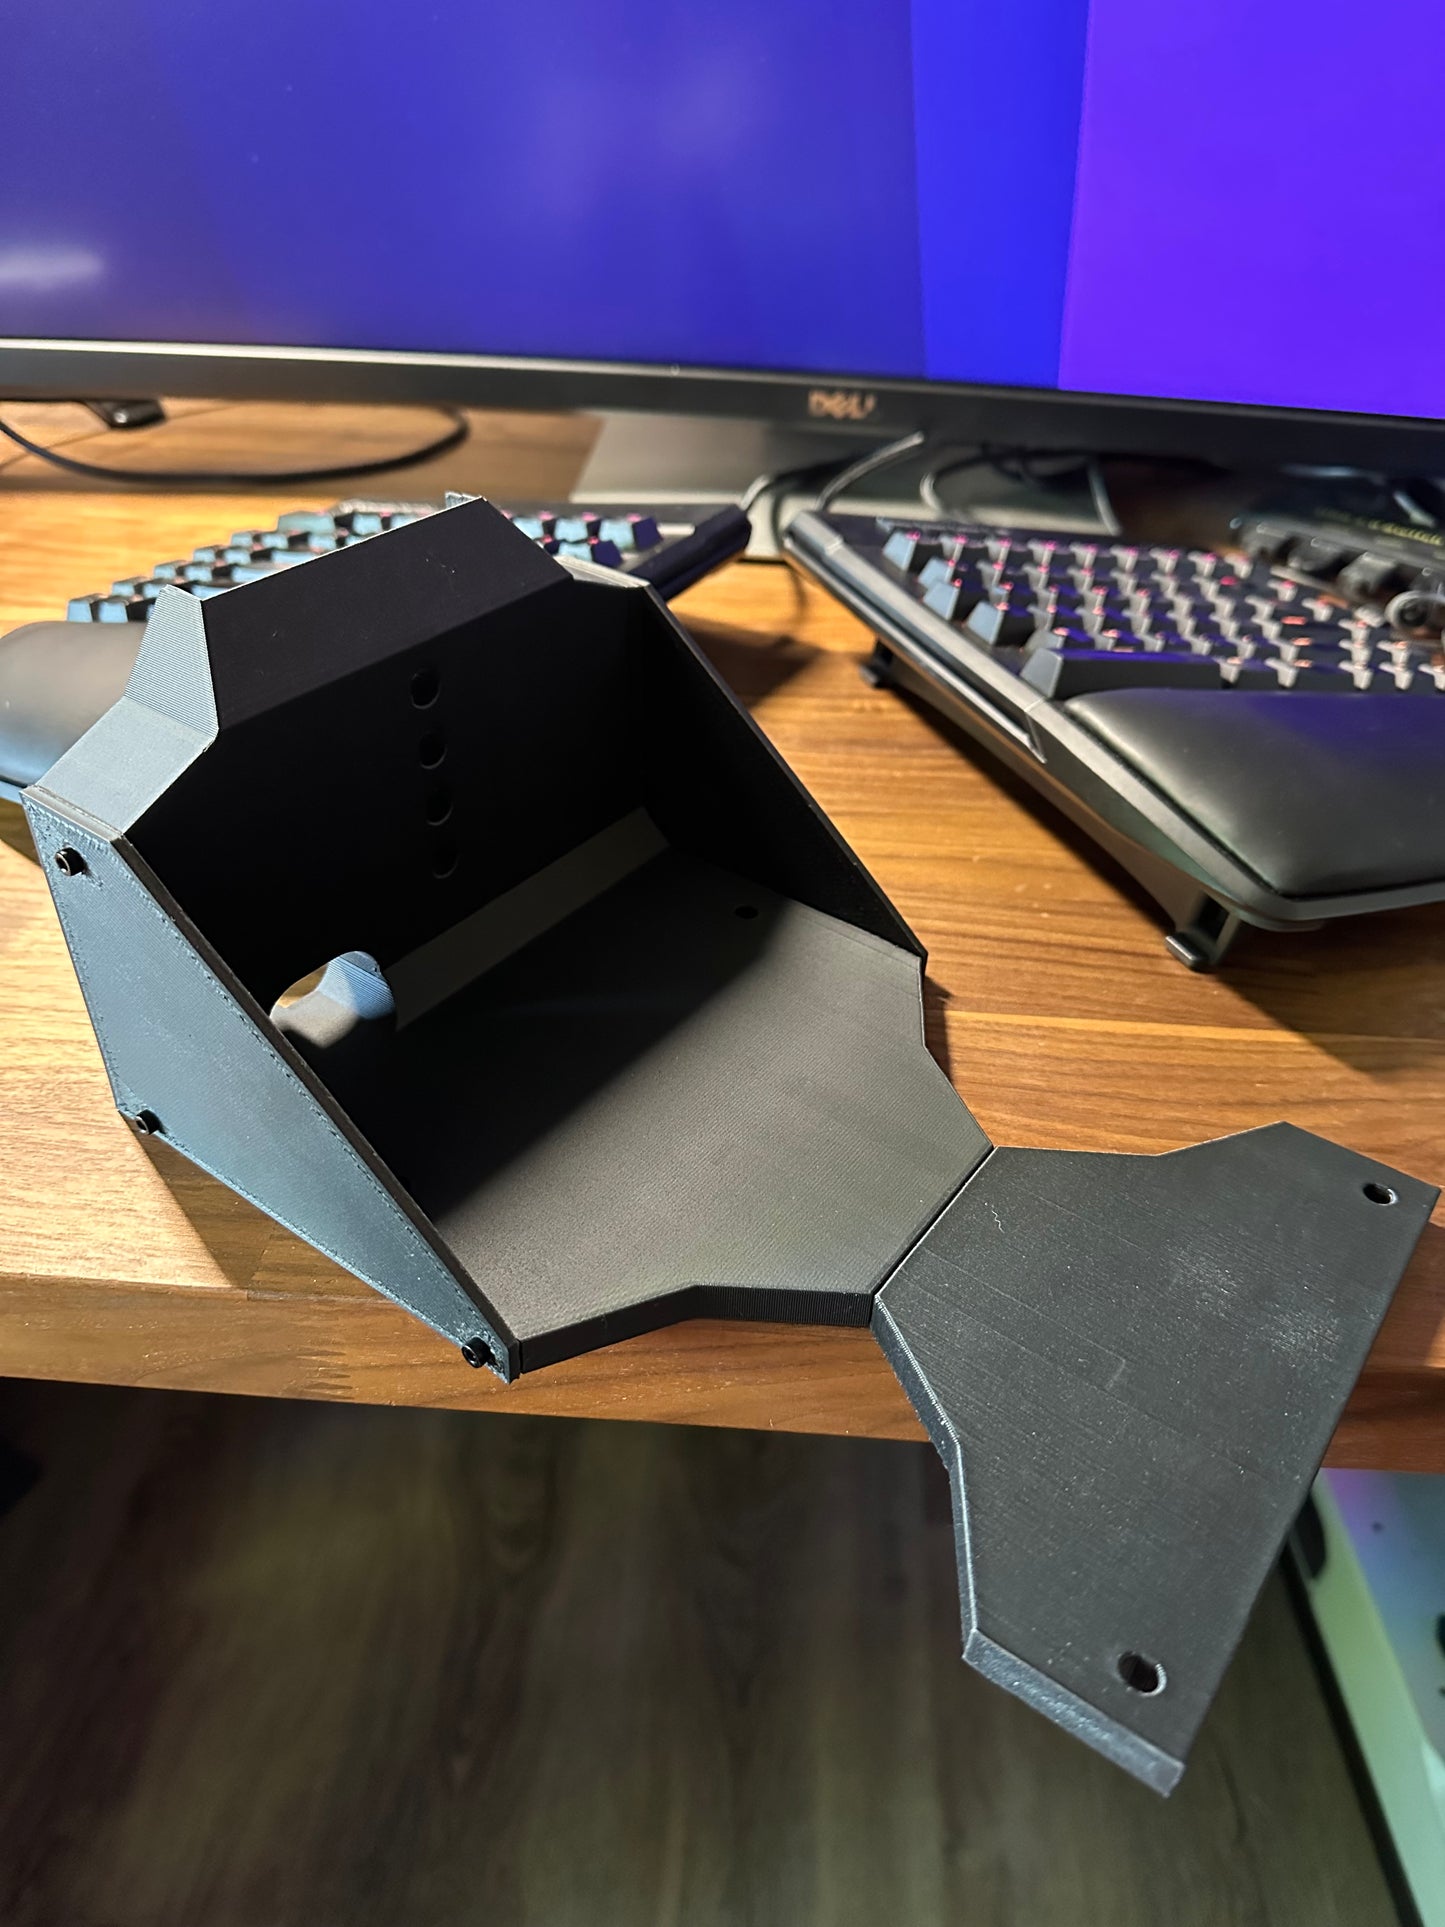 VKB Gladiator Desk Mount - 3D Printed WITH HARDWARE